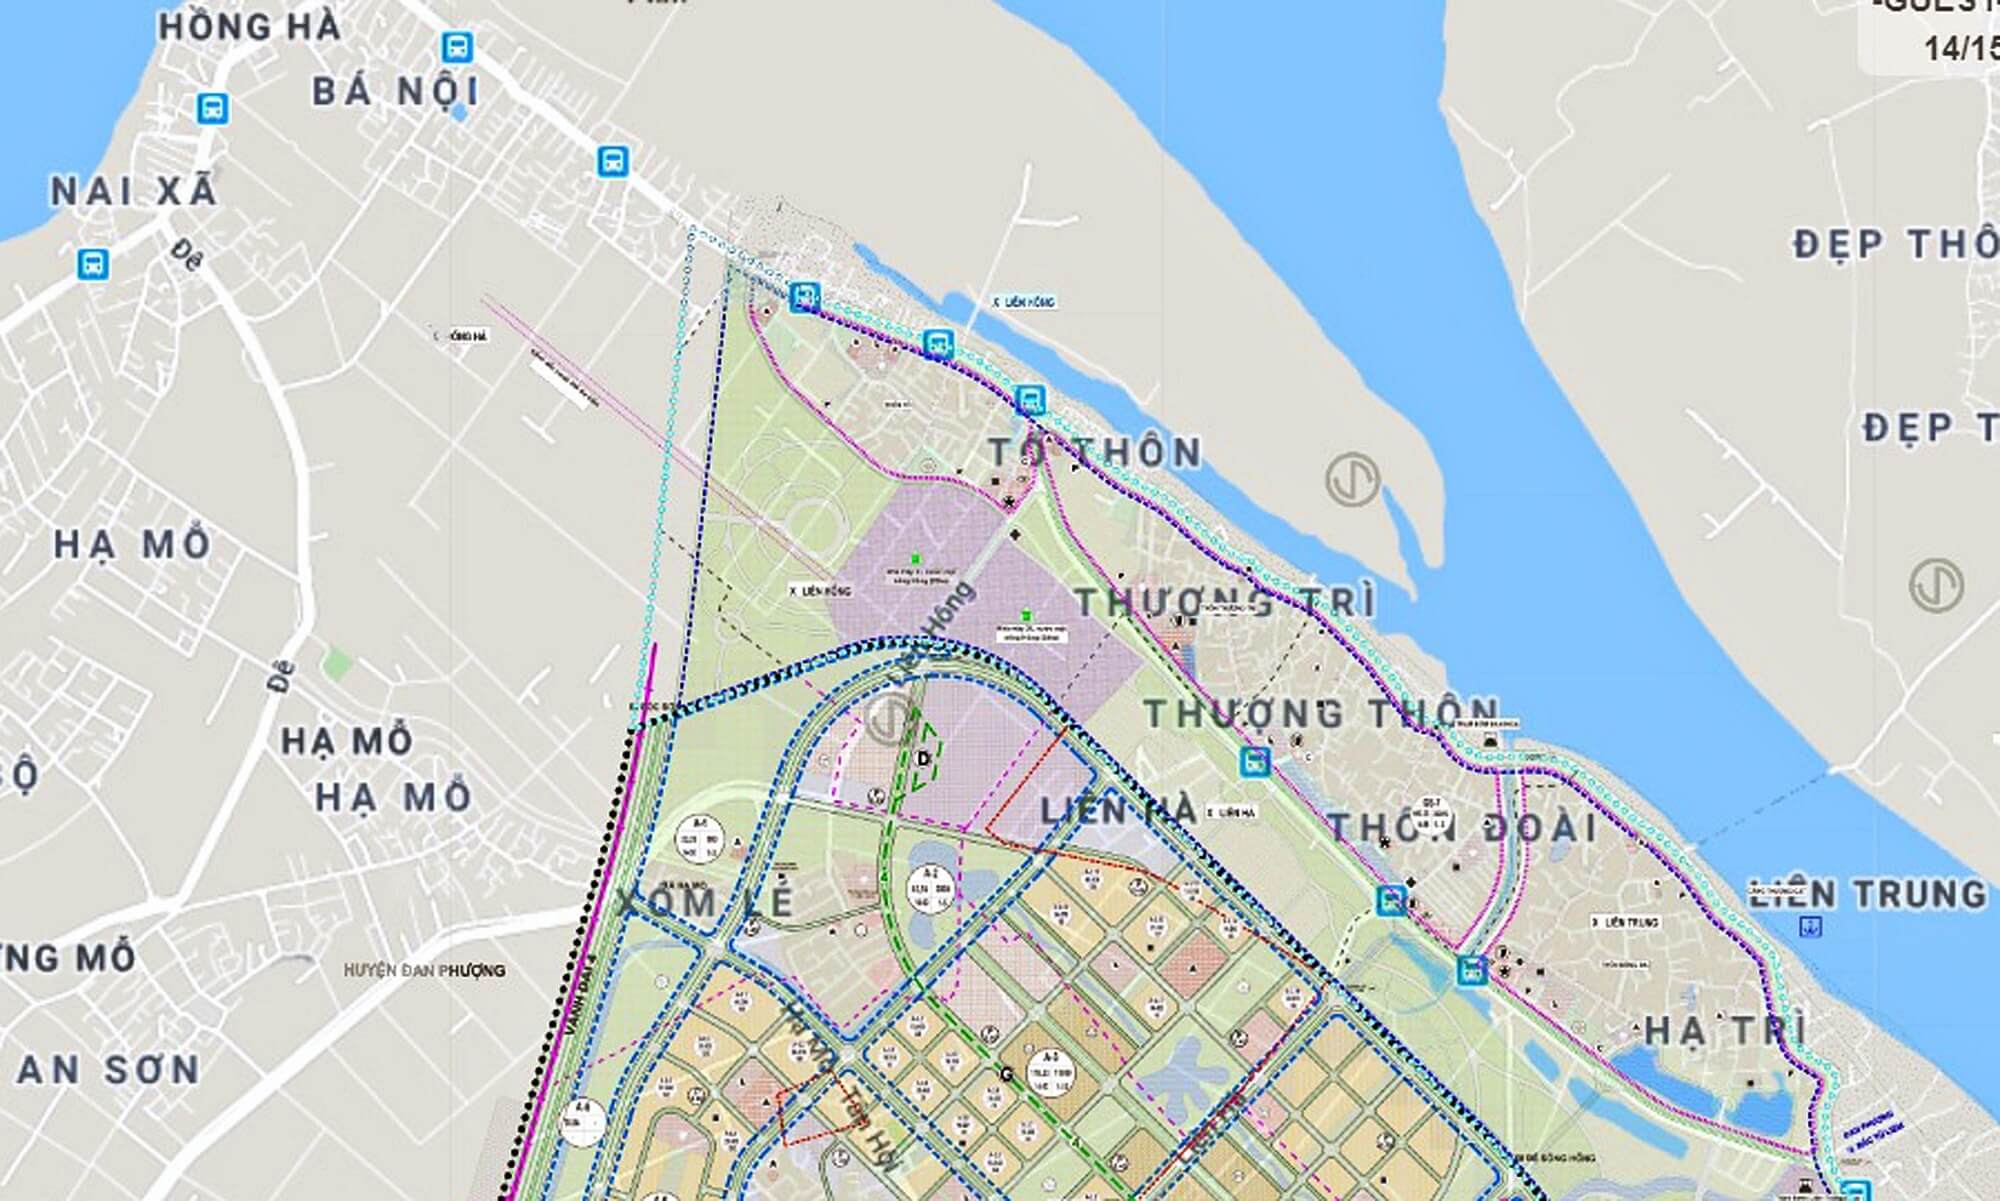 Quy hoạch bản đồ vị trí cầu Hồng Hà nằm trên địa bàn huyện Đan Phượng.